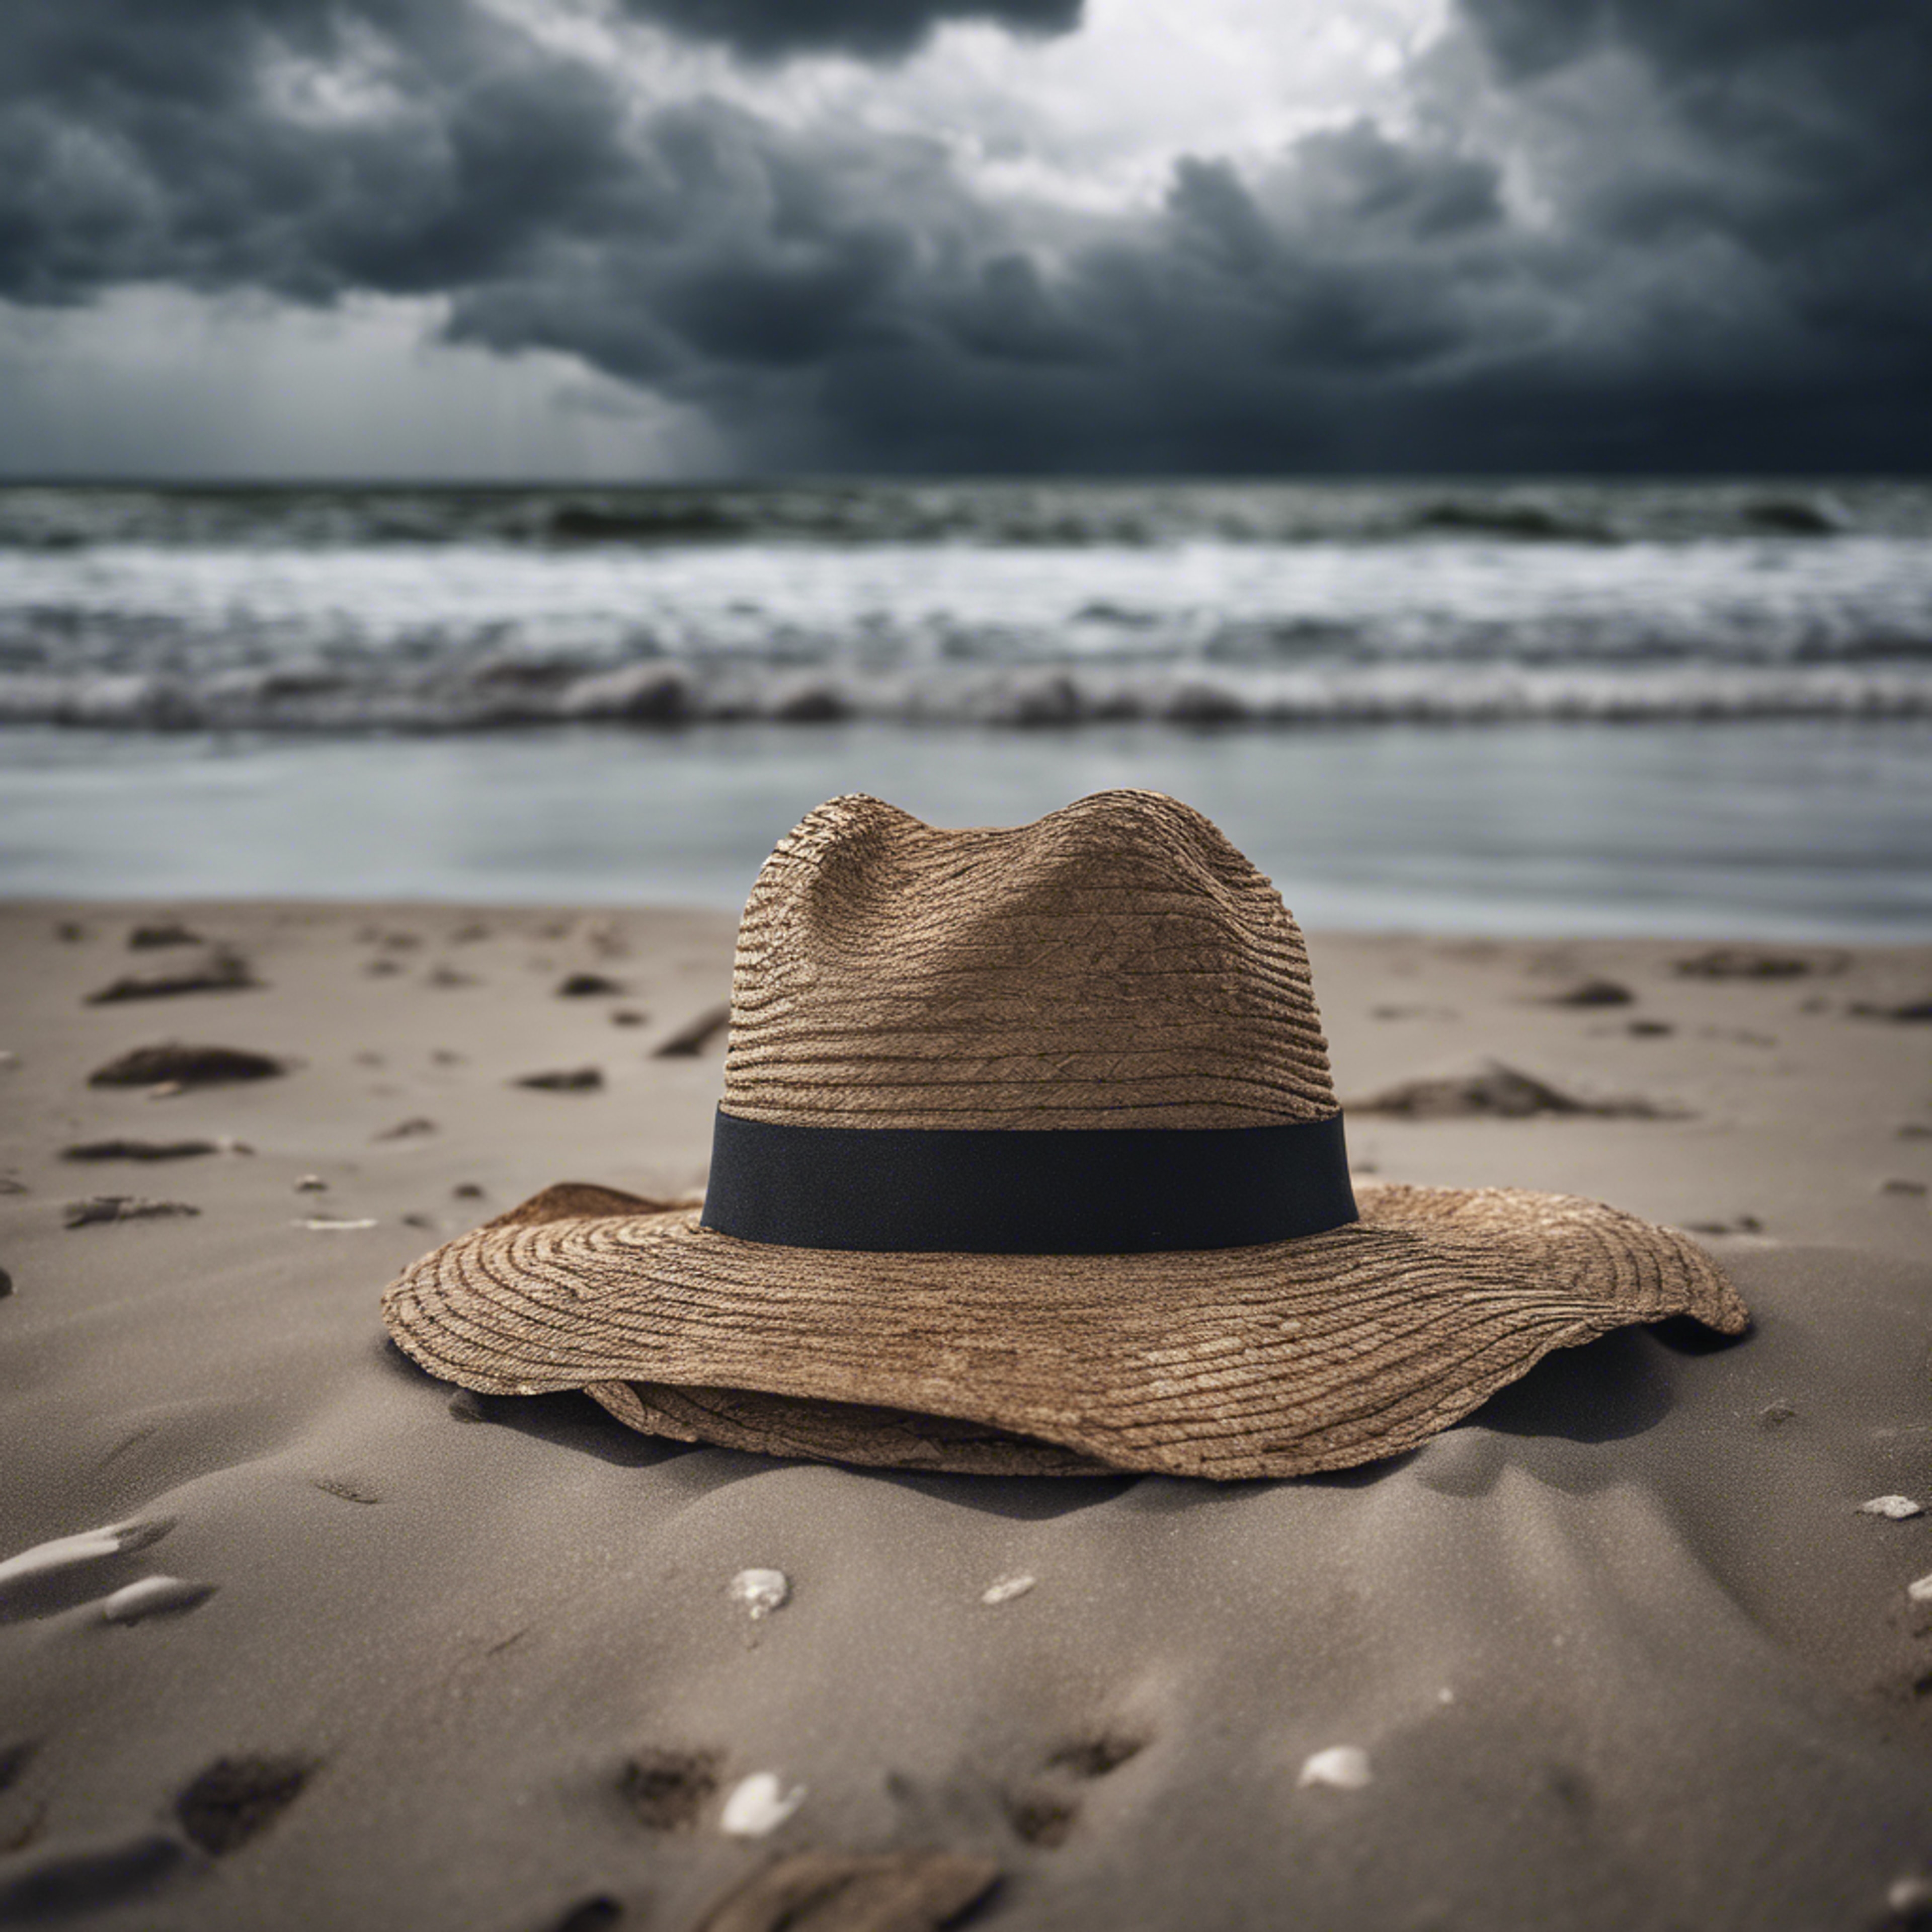 A single, forsaken hat blowing across a desolate beach under a stormy sky. ផ្ទាំង​រូបភាព[22c522374a7d402da3d5]